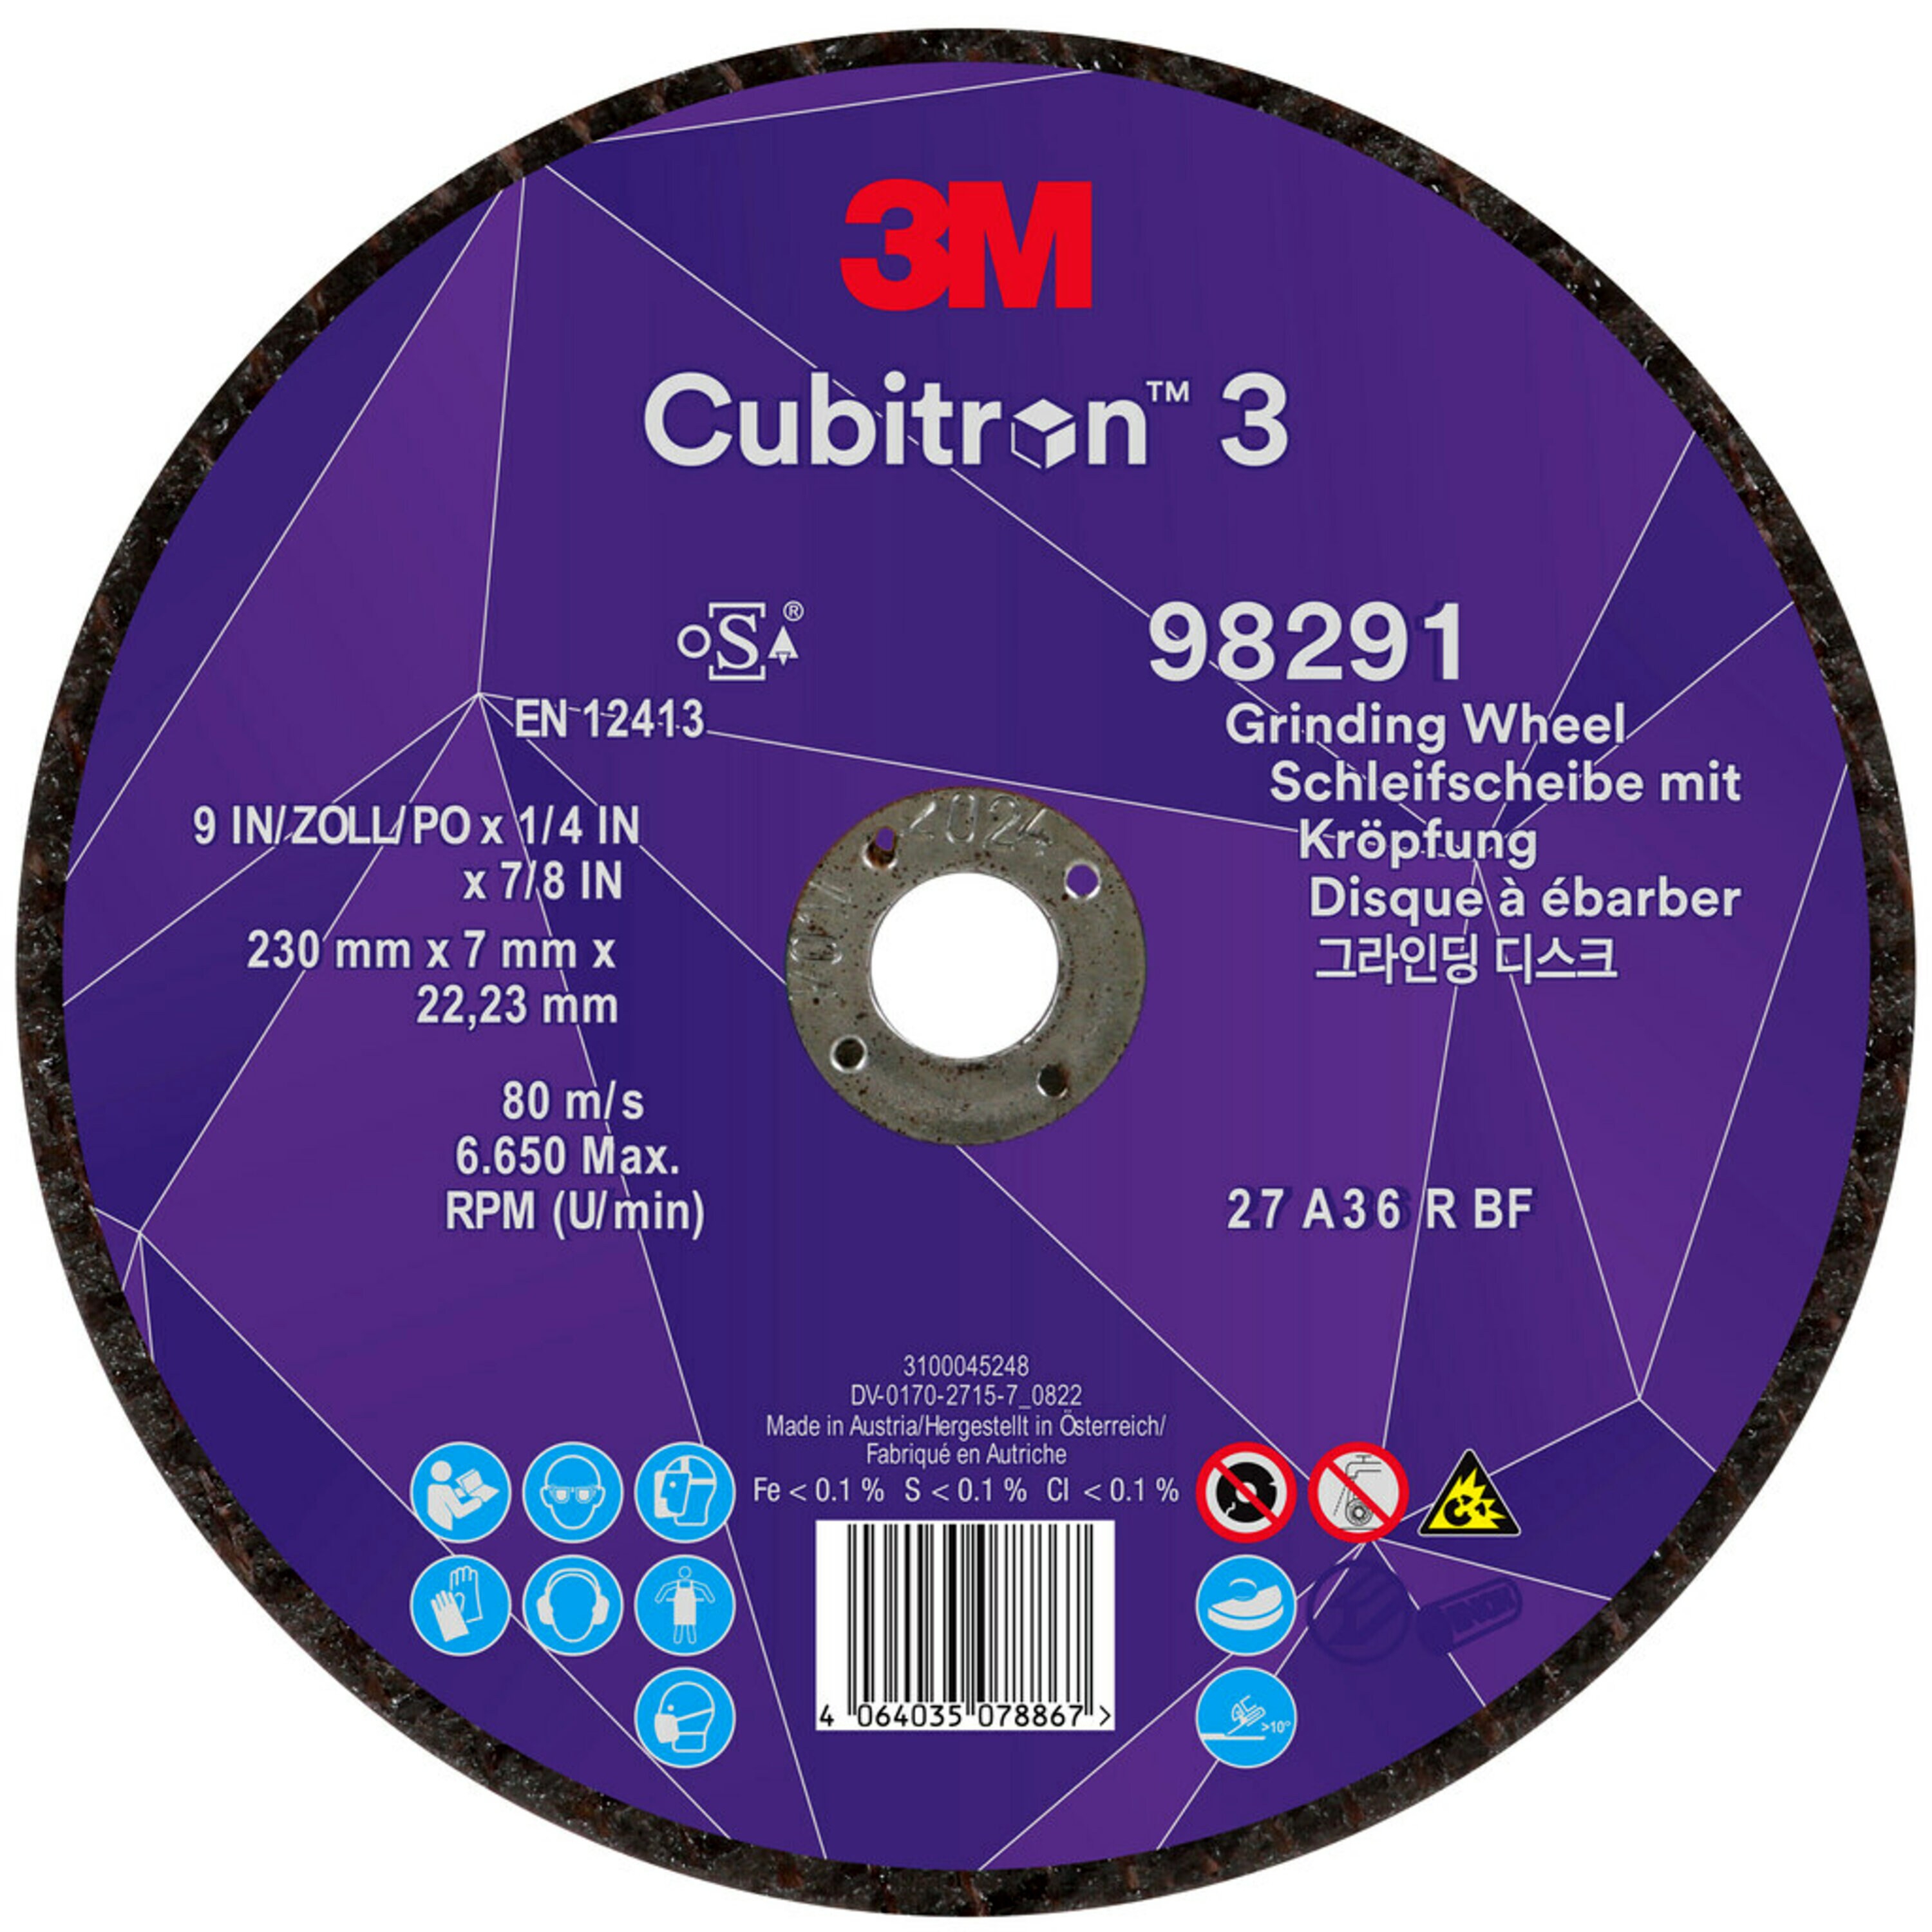 3M Cubitron 3 disque à ébarber, 230 mm, 7,0 mm, 22,23 mm, 36 , type 27 # 98291